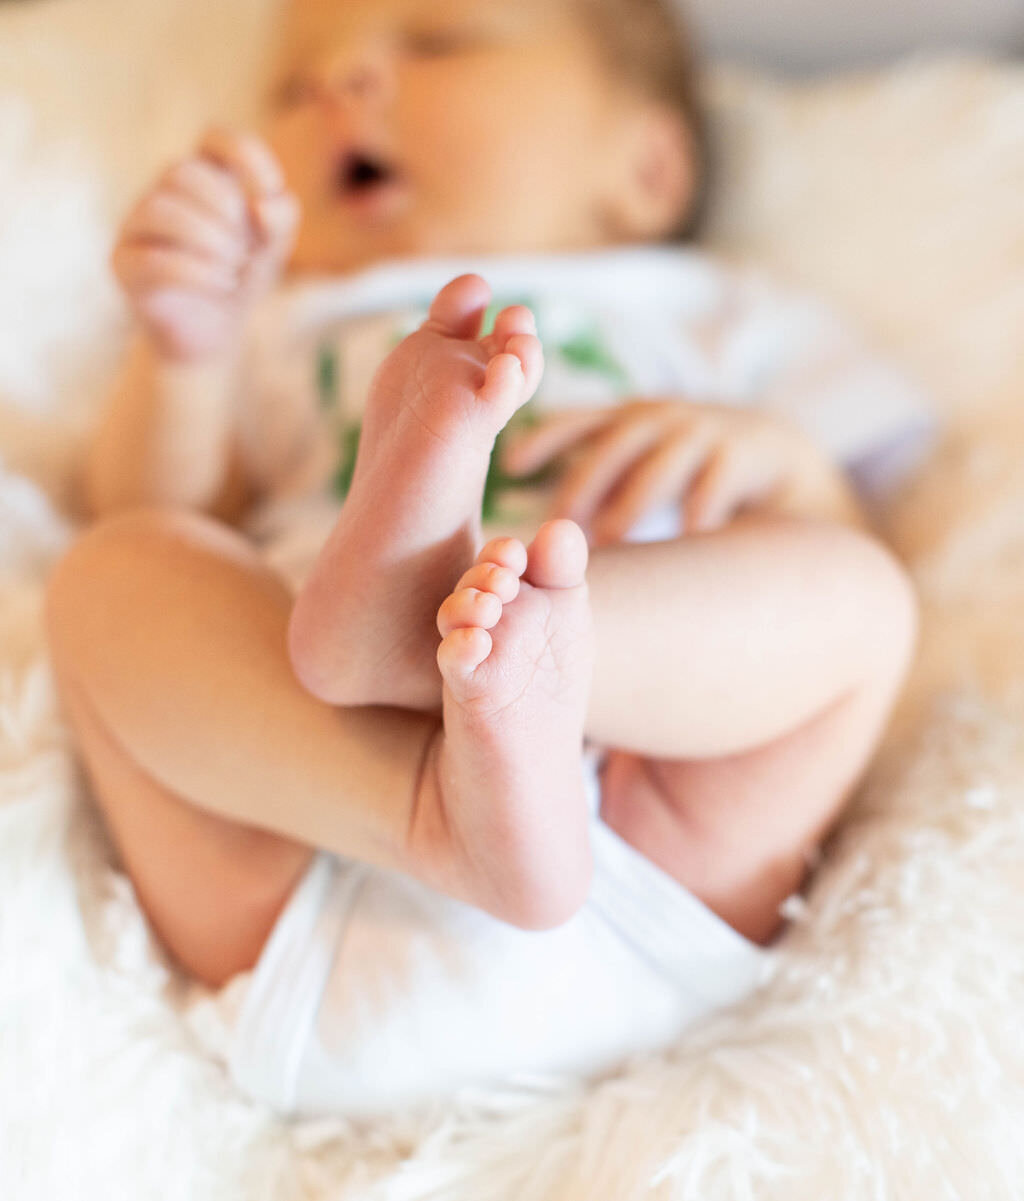 A close up of a newborn baby's feet.